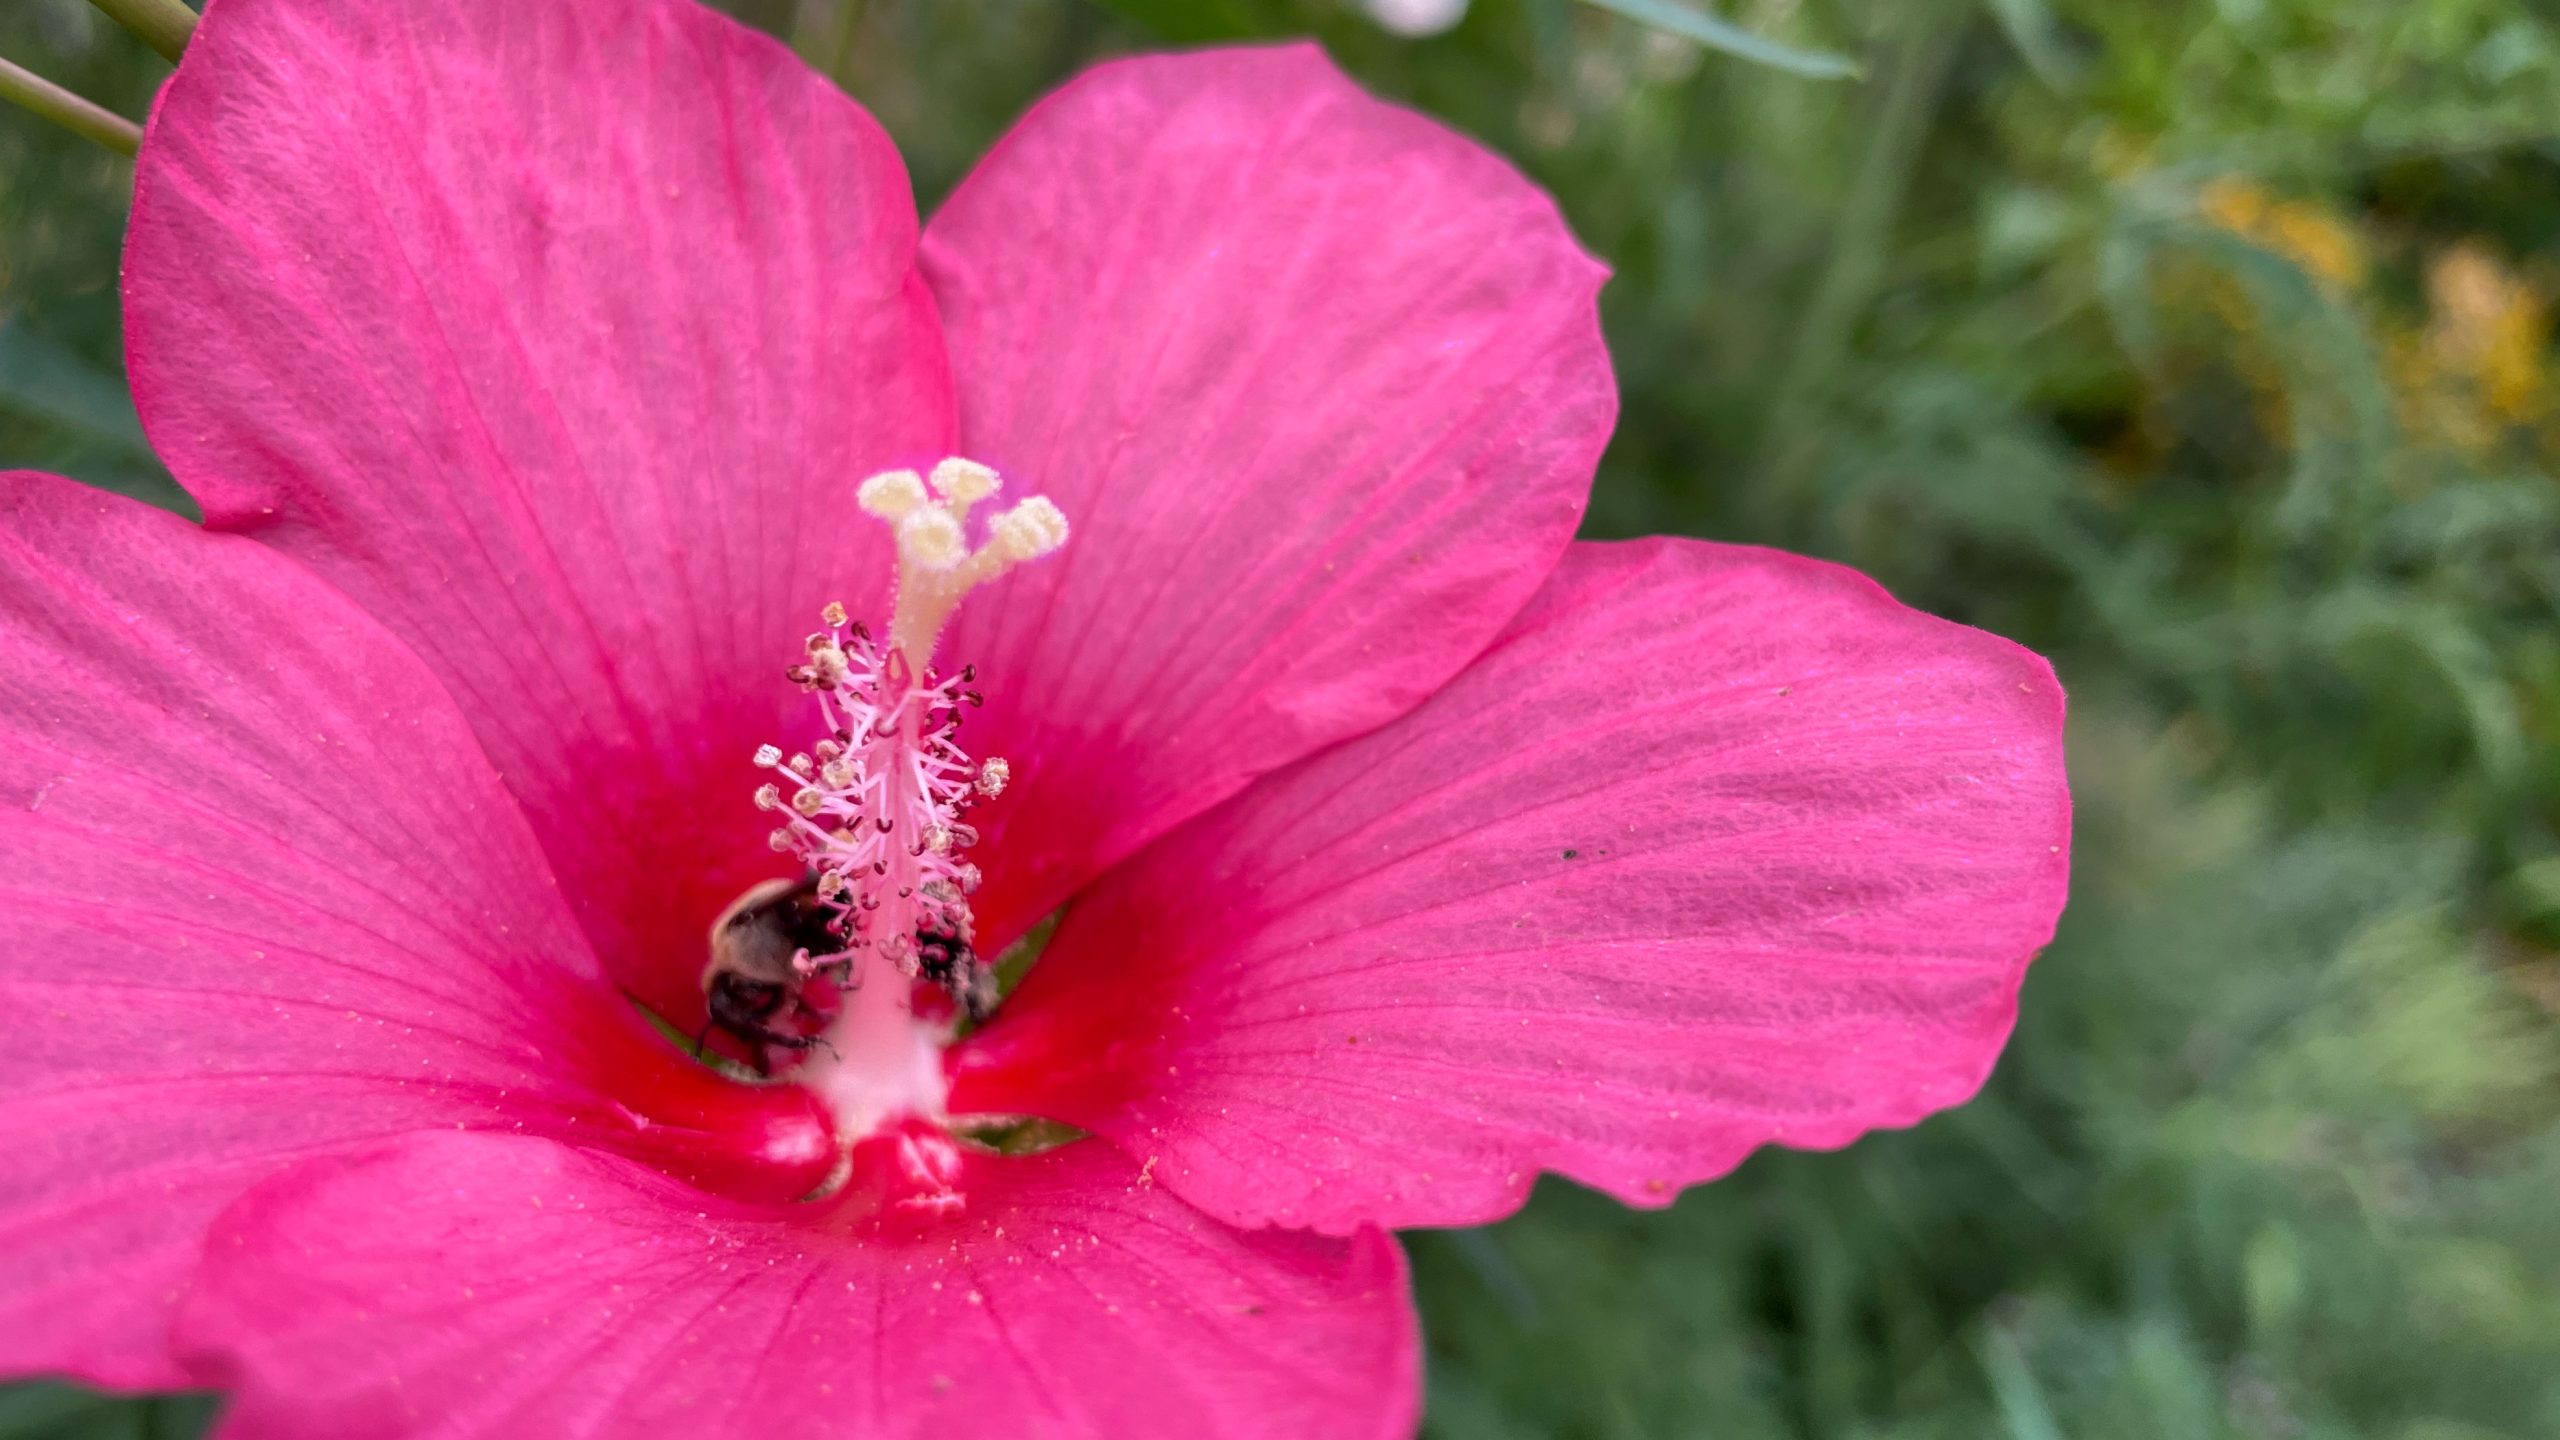 pollinator on flower stamen